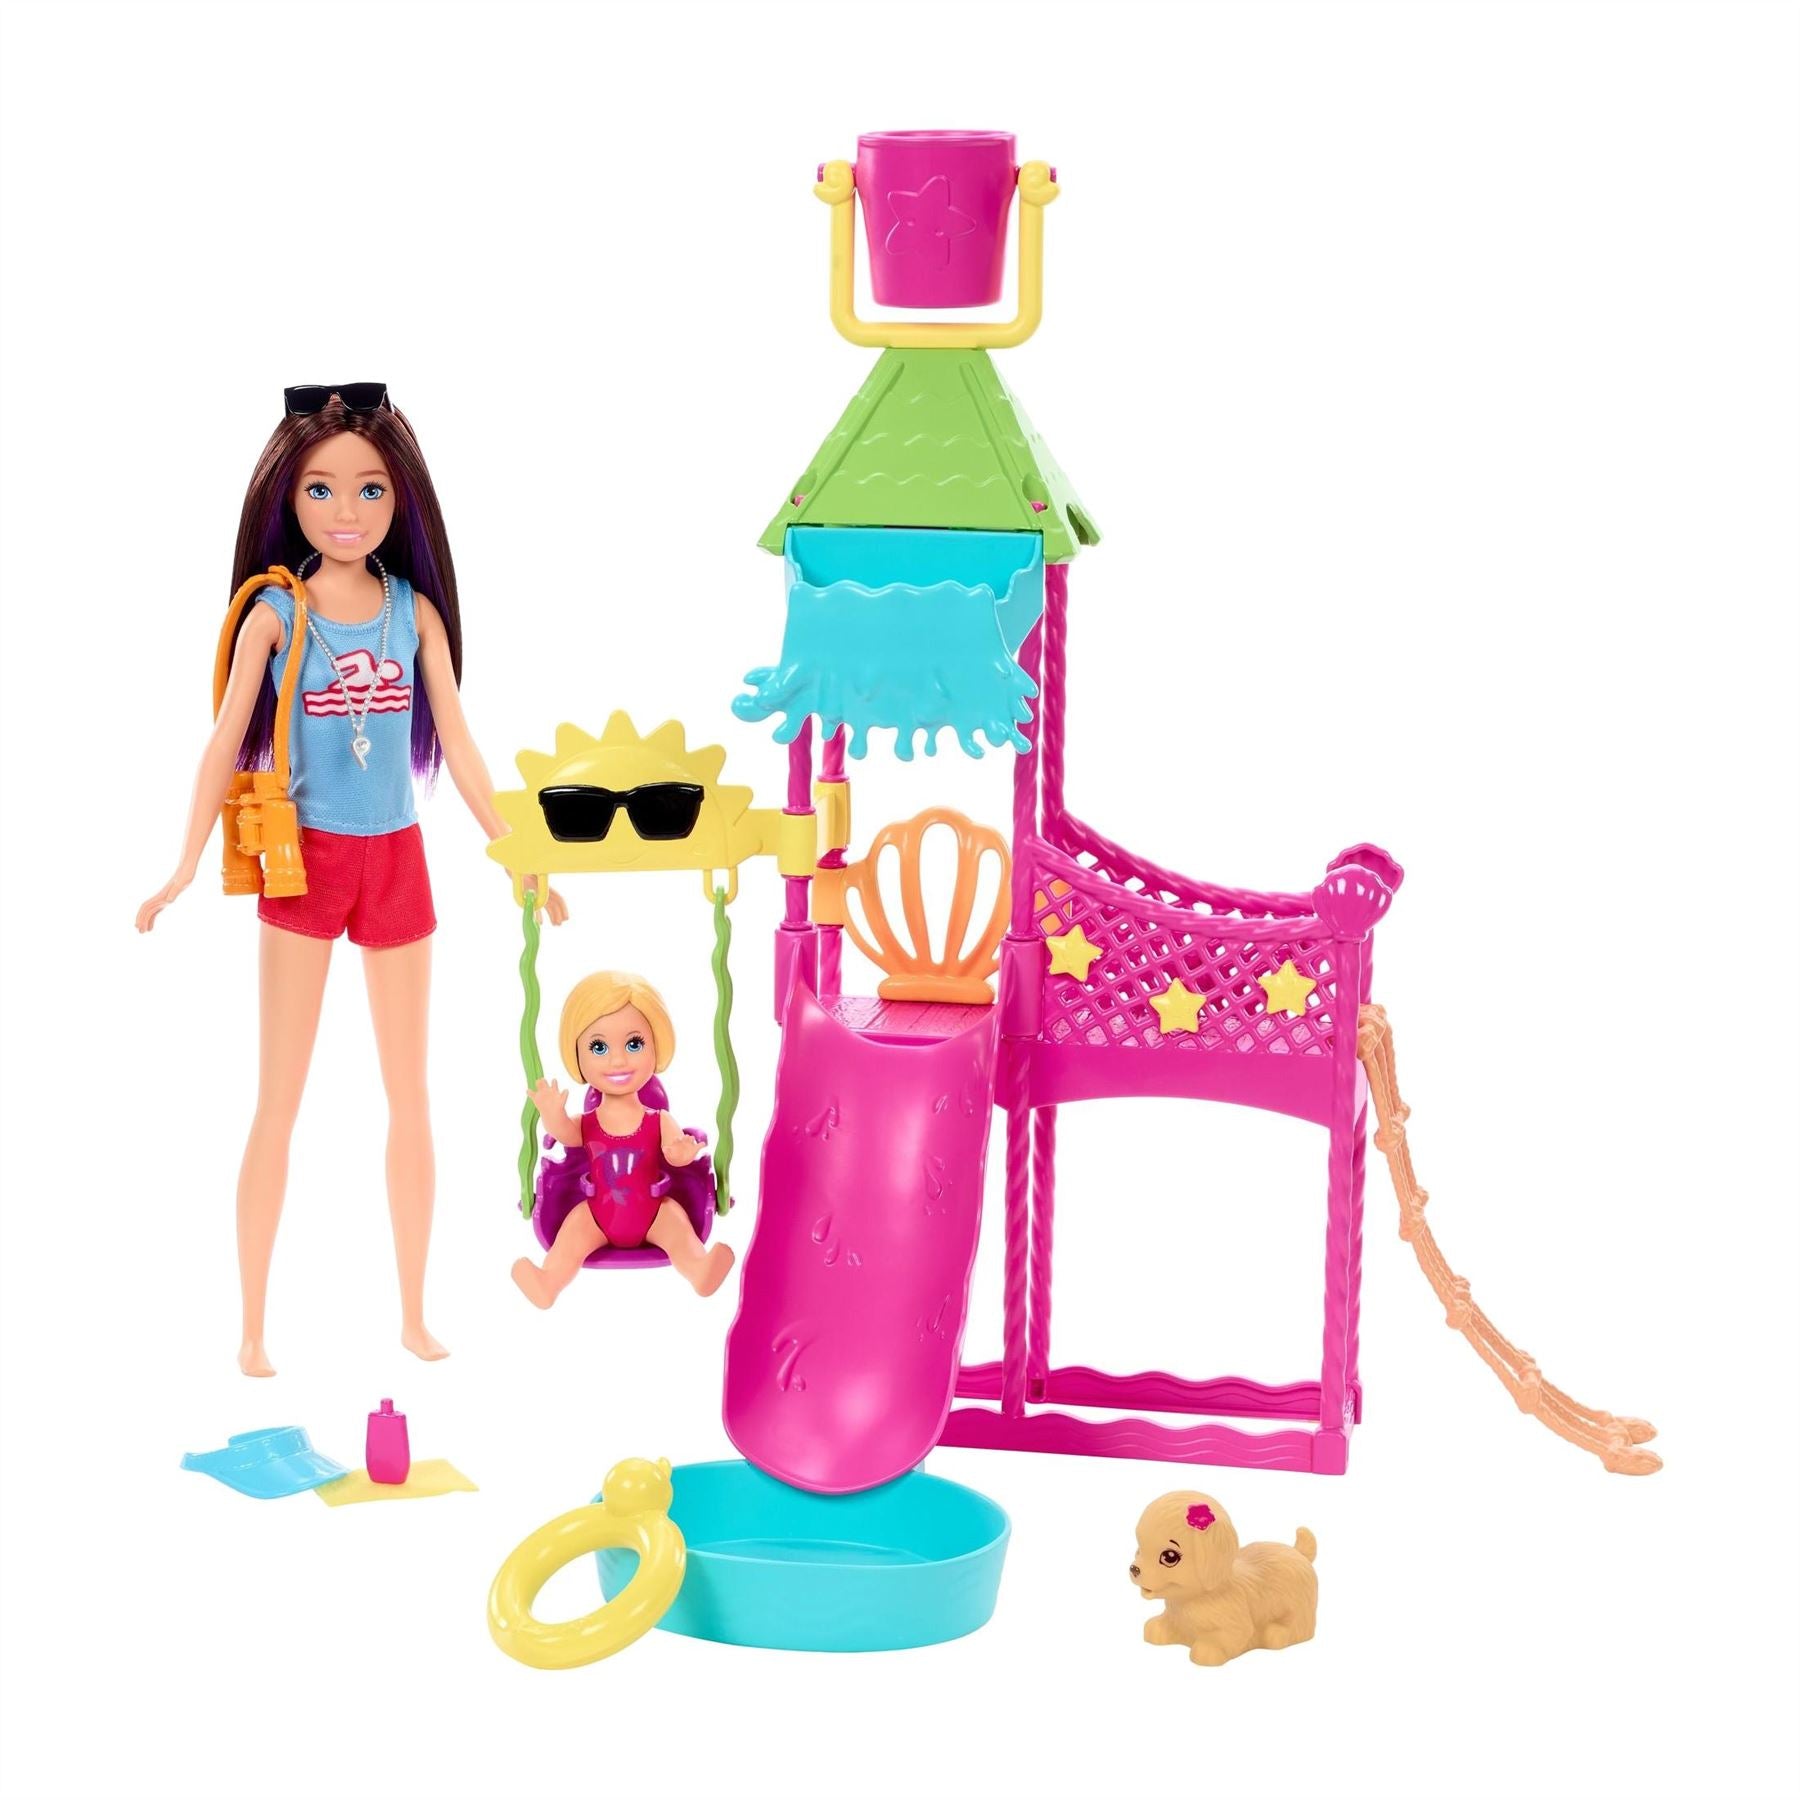 Barbie Skipper Water Park Play Set